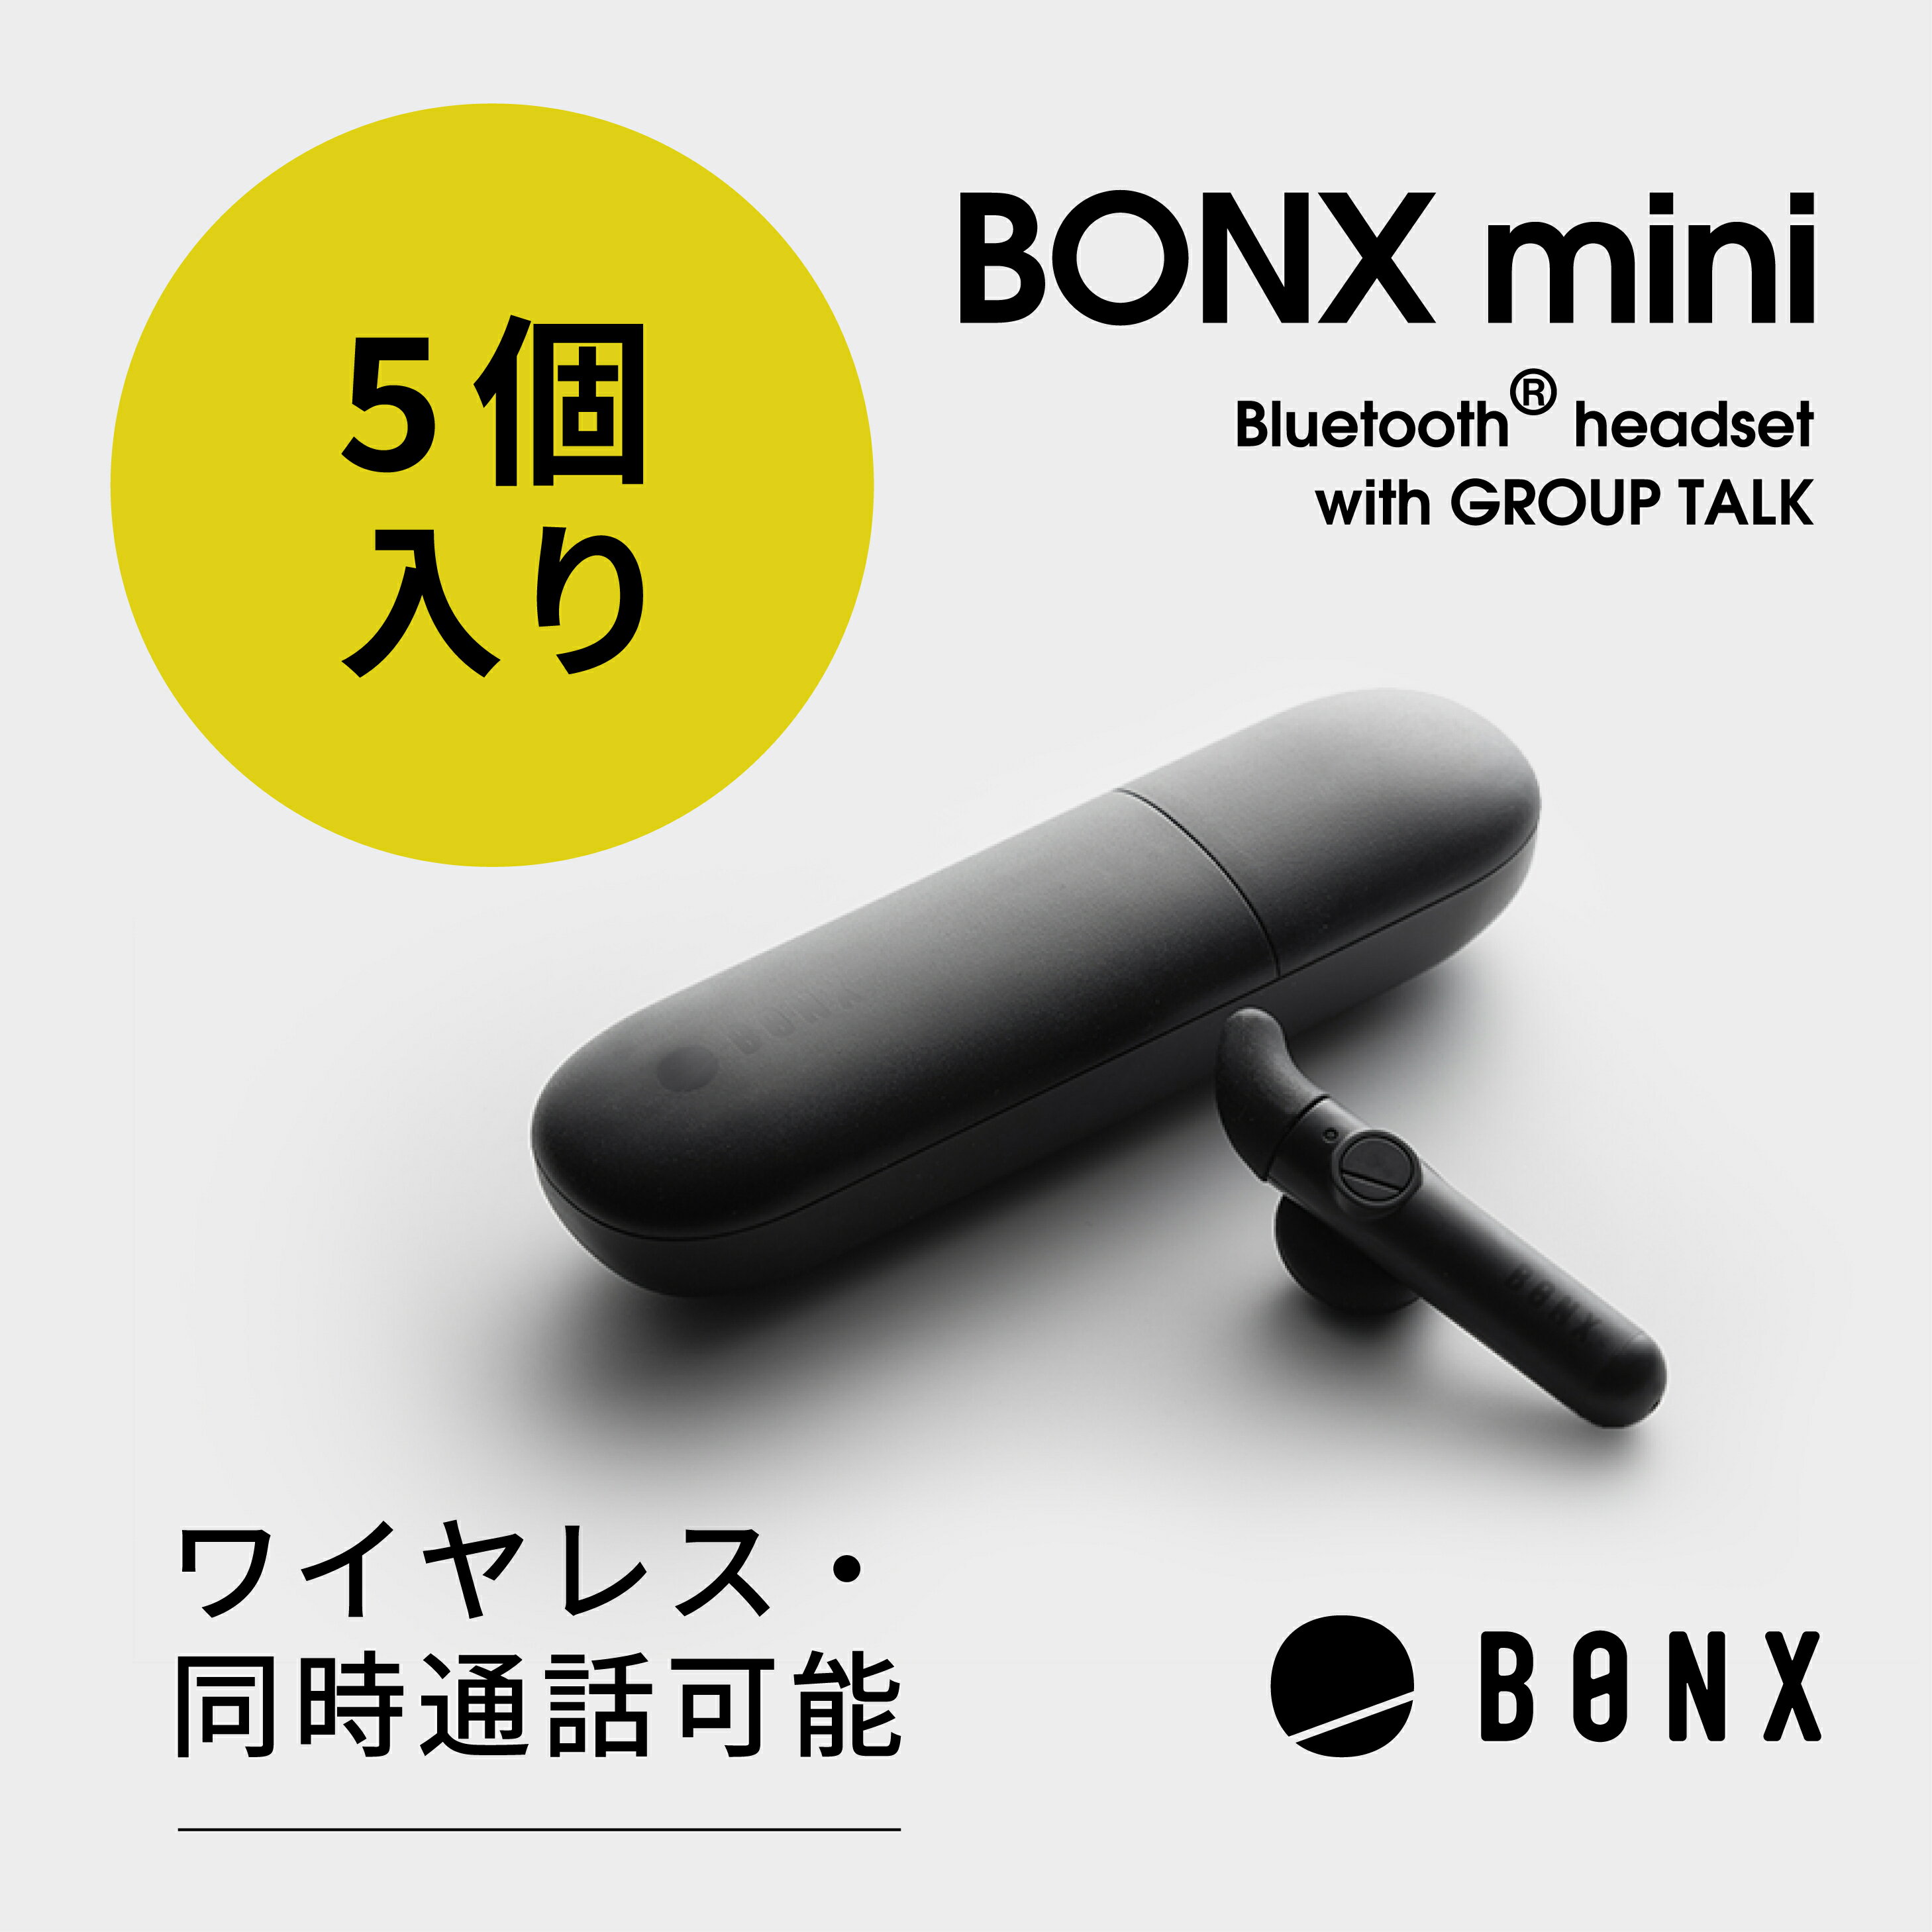 【BONX ボンクス 公式限定 新パッケージ】 インカム ワイヤレス トランシーバー 小型 同時通話 Bluetooth ブルートゥース 長距離 無線機 トランシーバー 業務用 インカム BONX mini